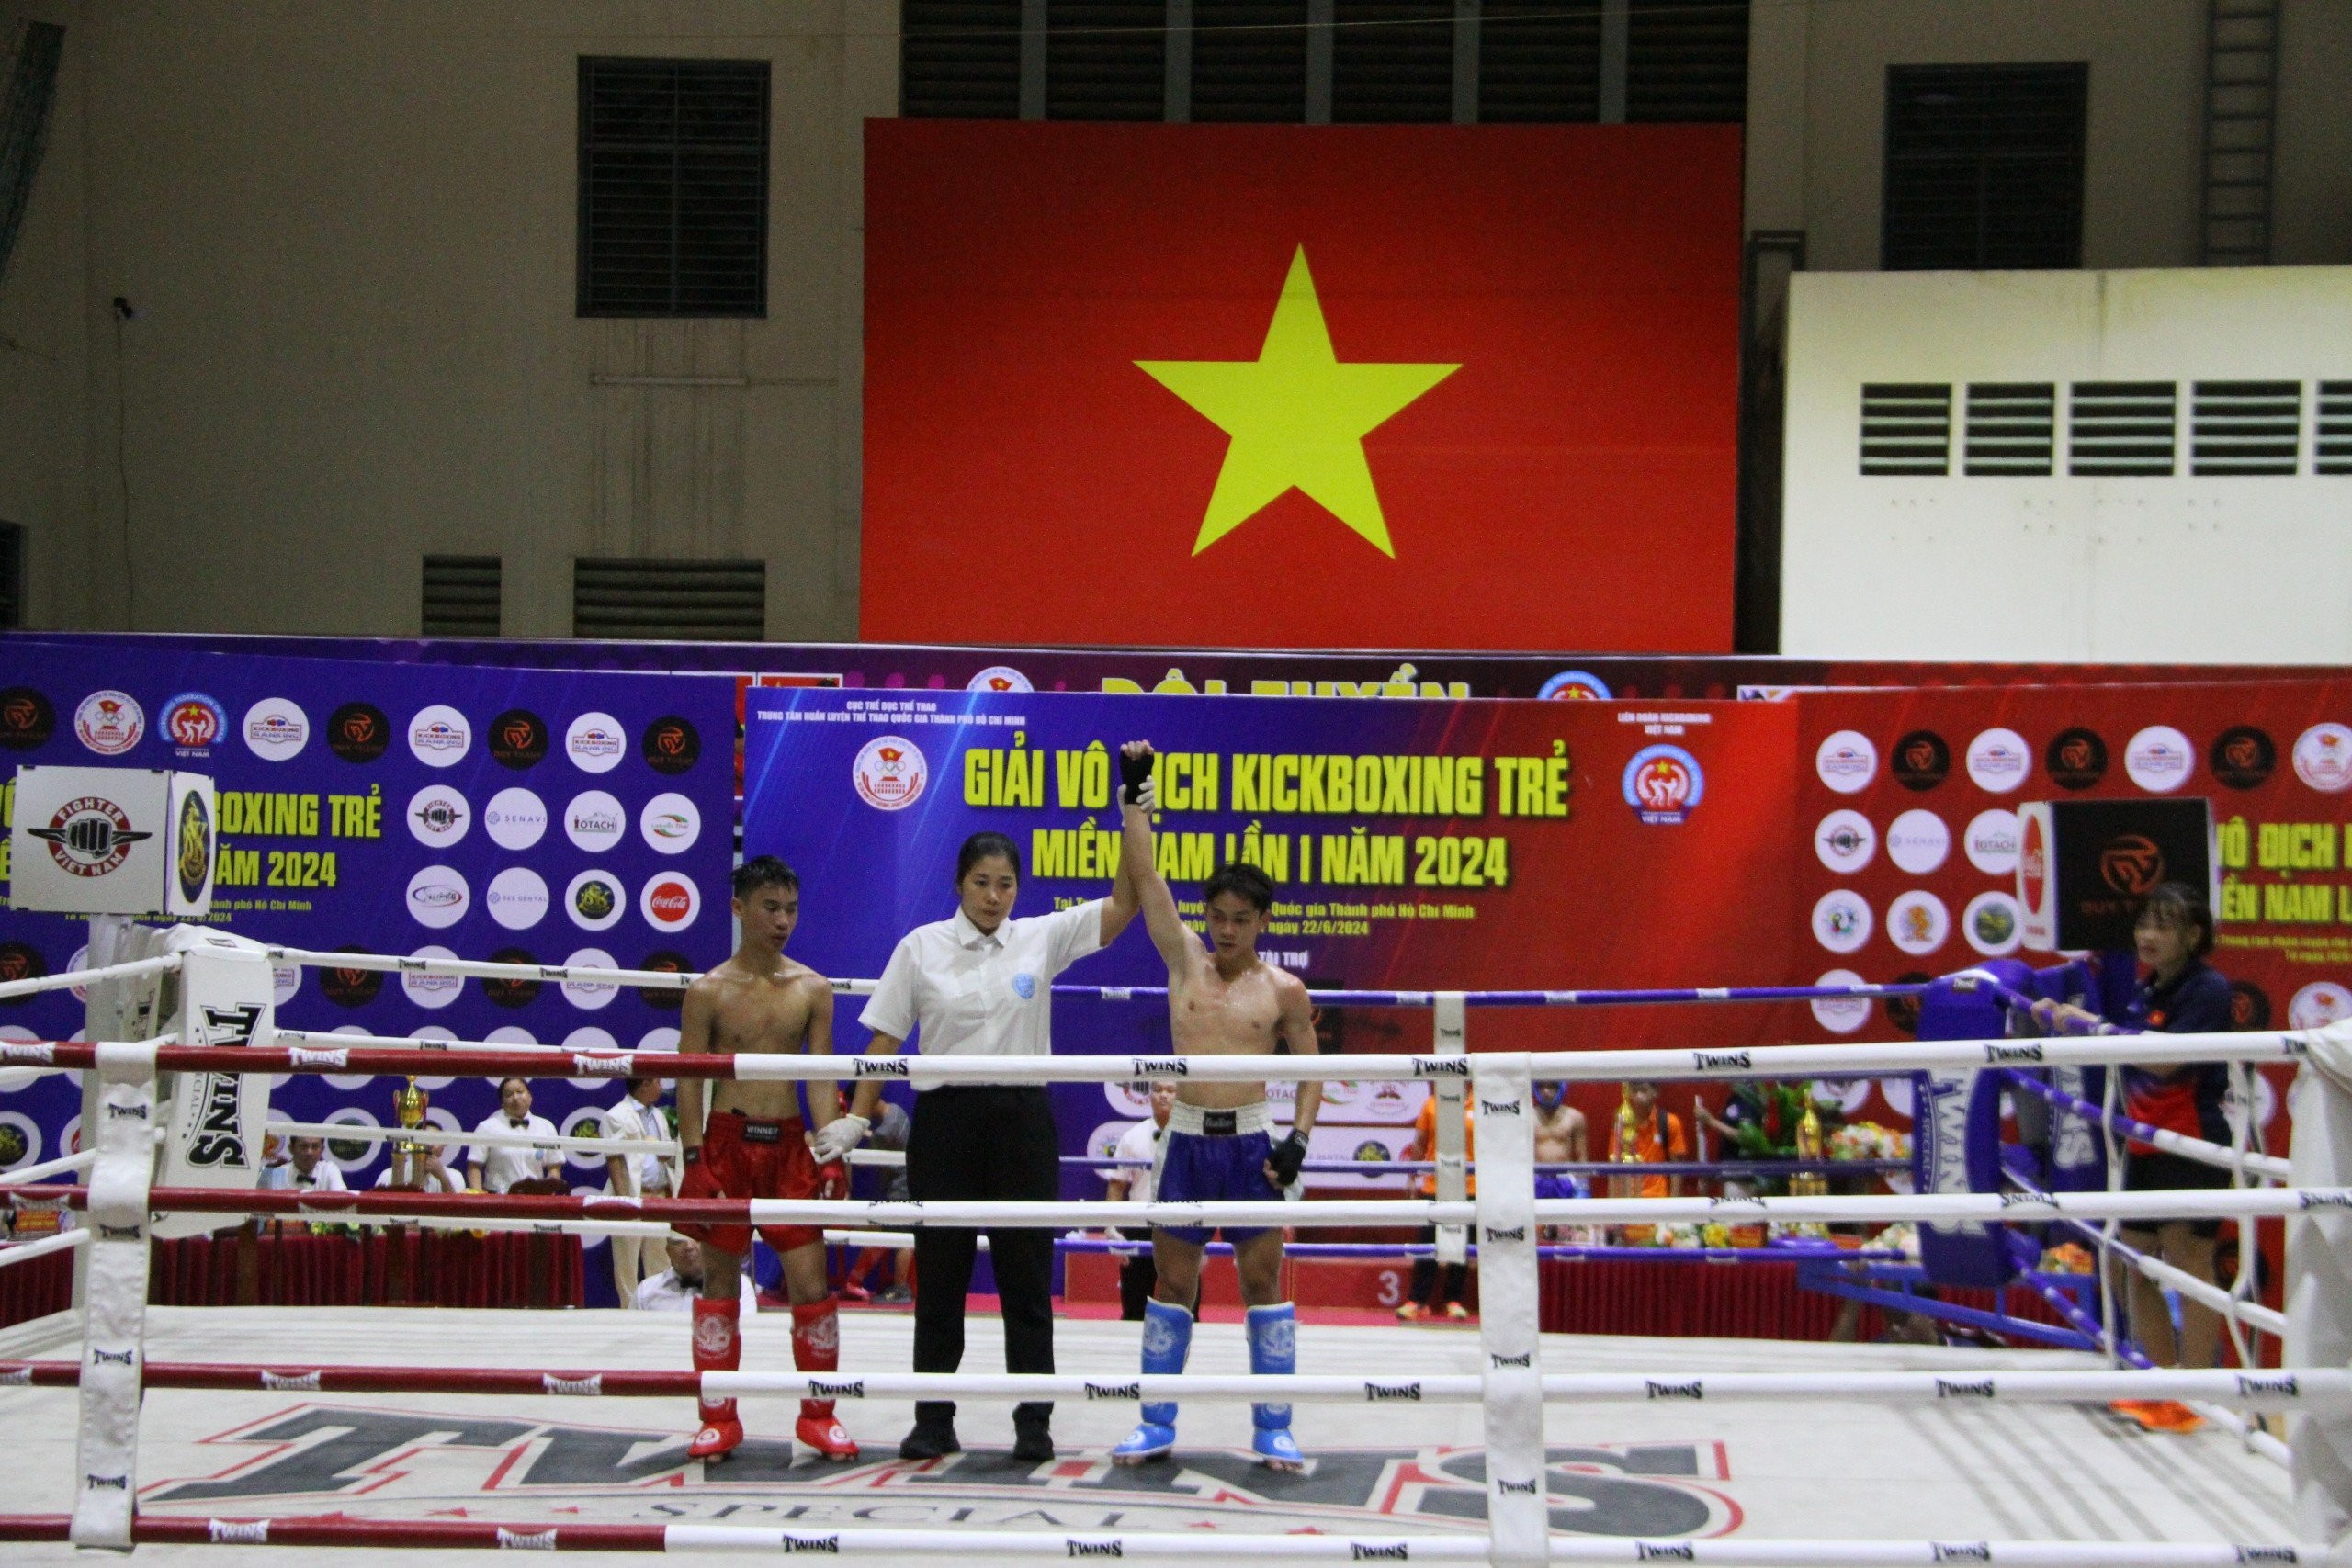 Phát hiện nhiều nhân tố mới cho Kickboxing Việt Nam